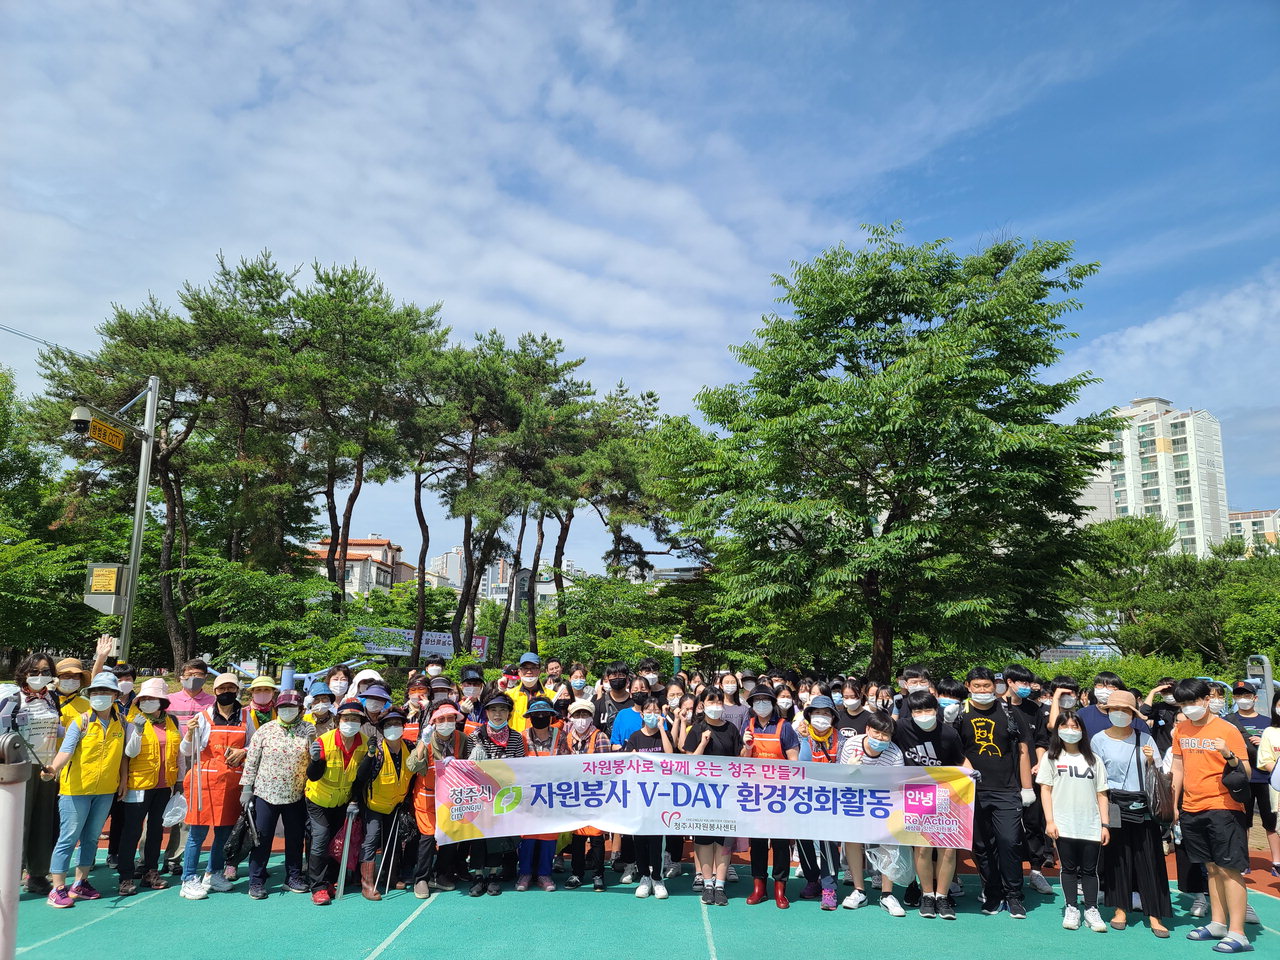 청주시자원봉사센터(센터장 김우혁)는 지난 13일 4개 구별 거점구역에서 자원봉사자 400여명이 참여한 가운데 '자원봉사 V-DAY 환경정화활동'을 했다.